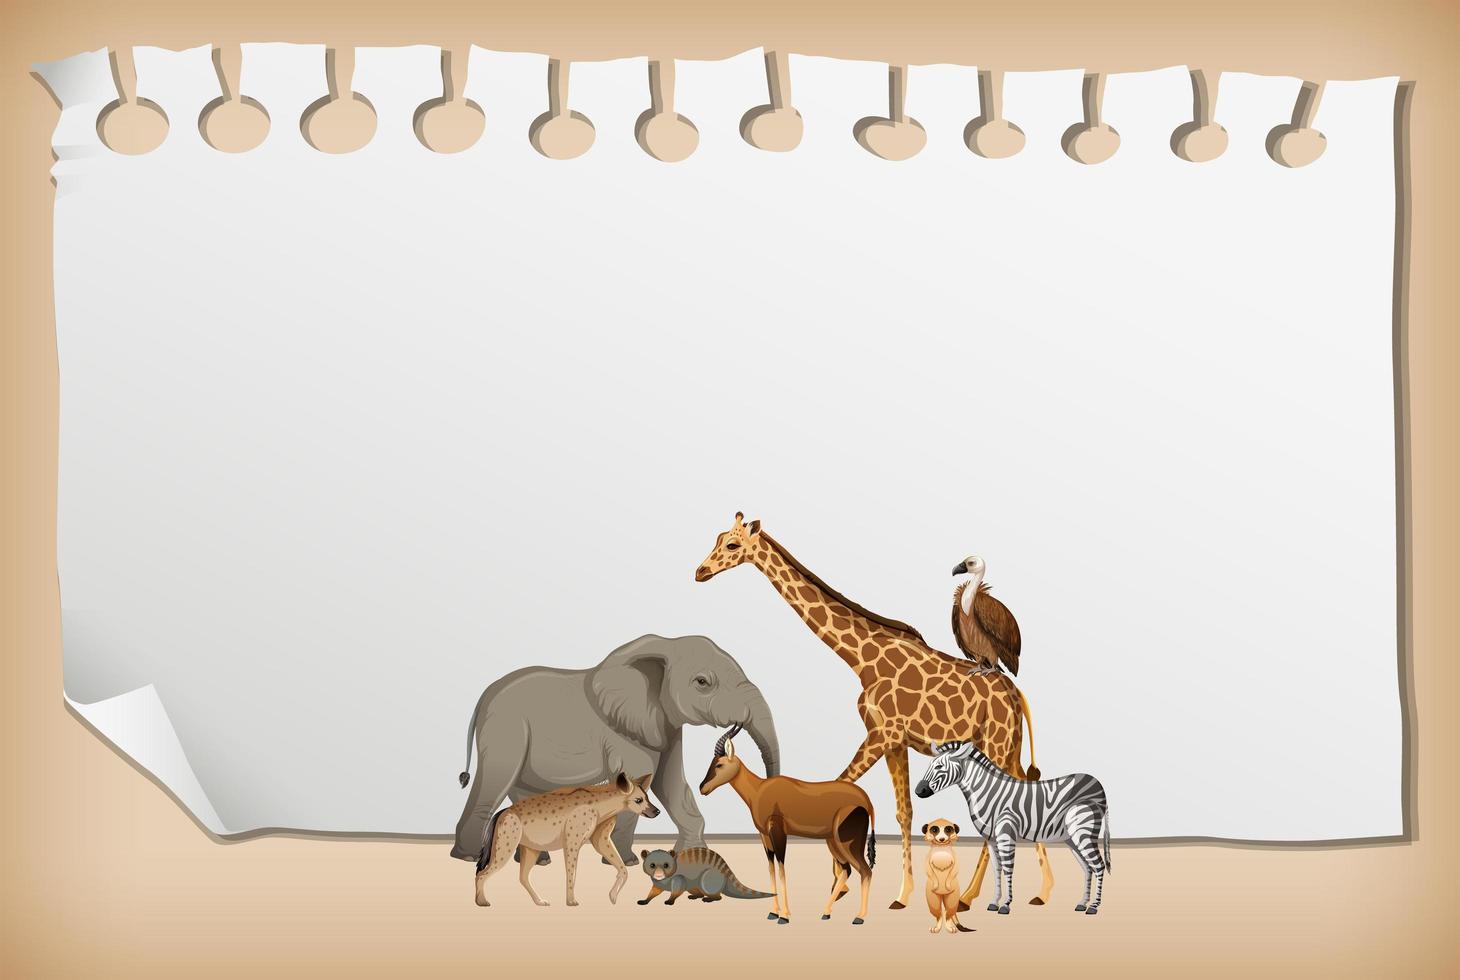 striscione di carta vuoto con animali selvatici africani vettore